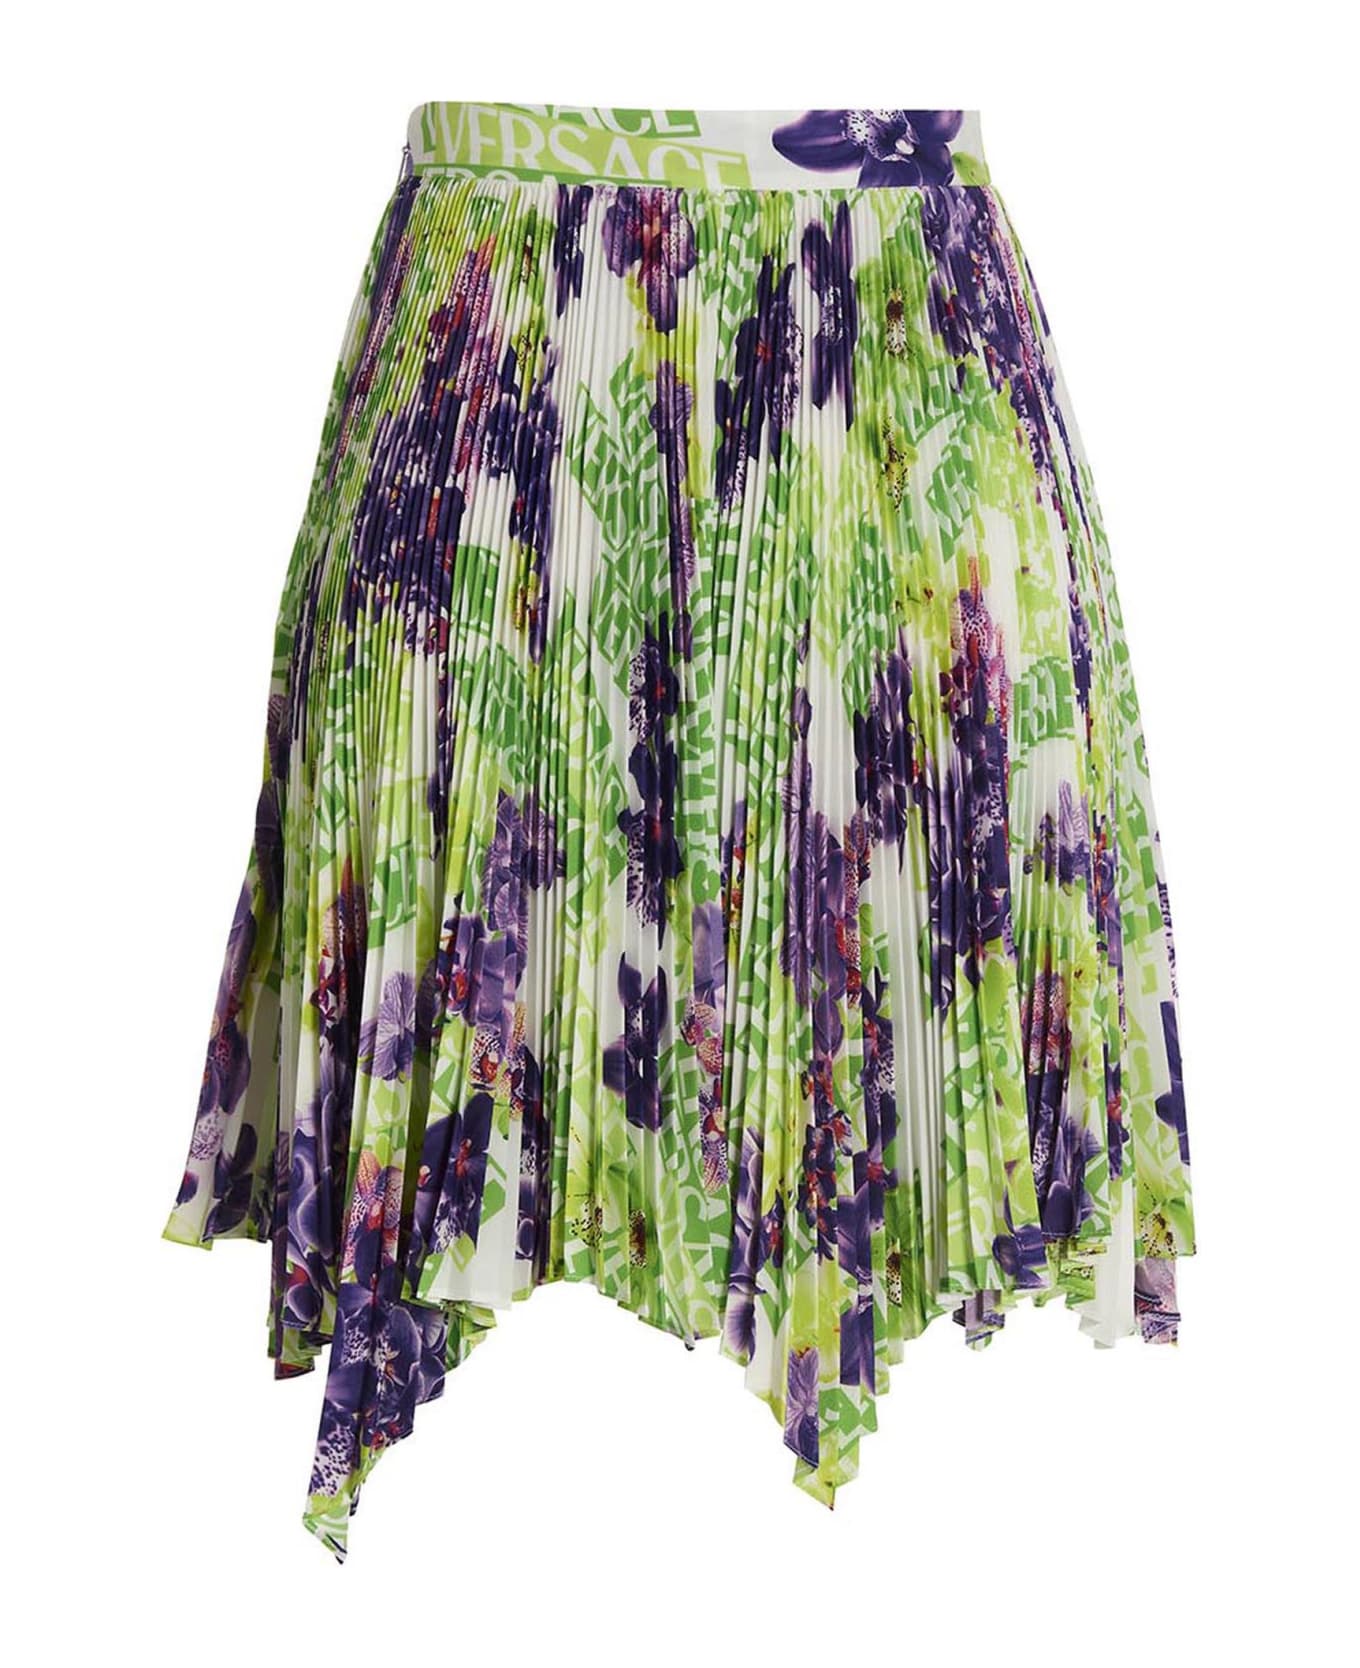 Versace 'versace' Skirt - Multicolor スカート